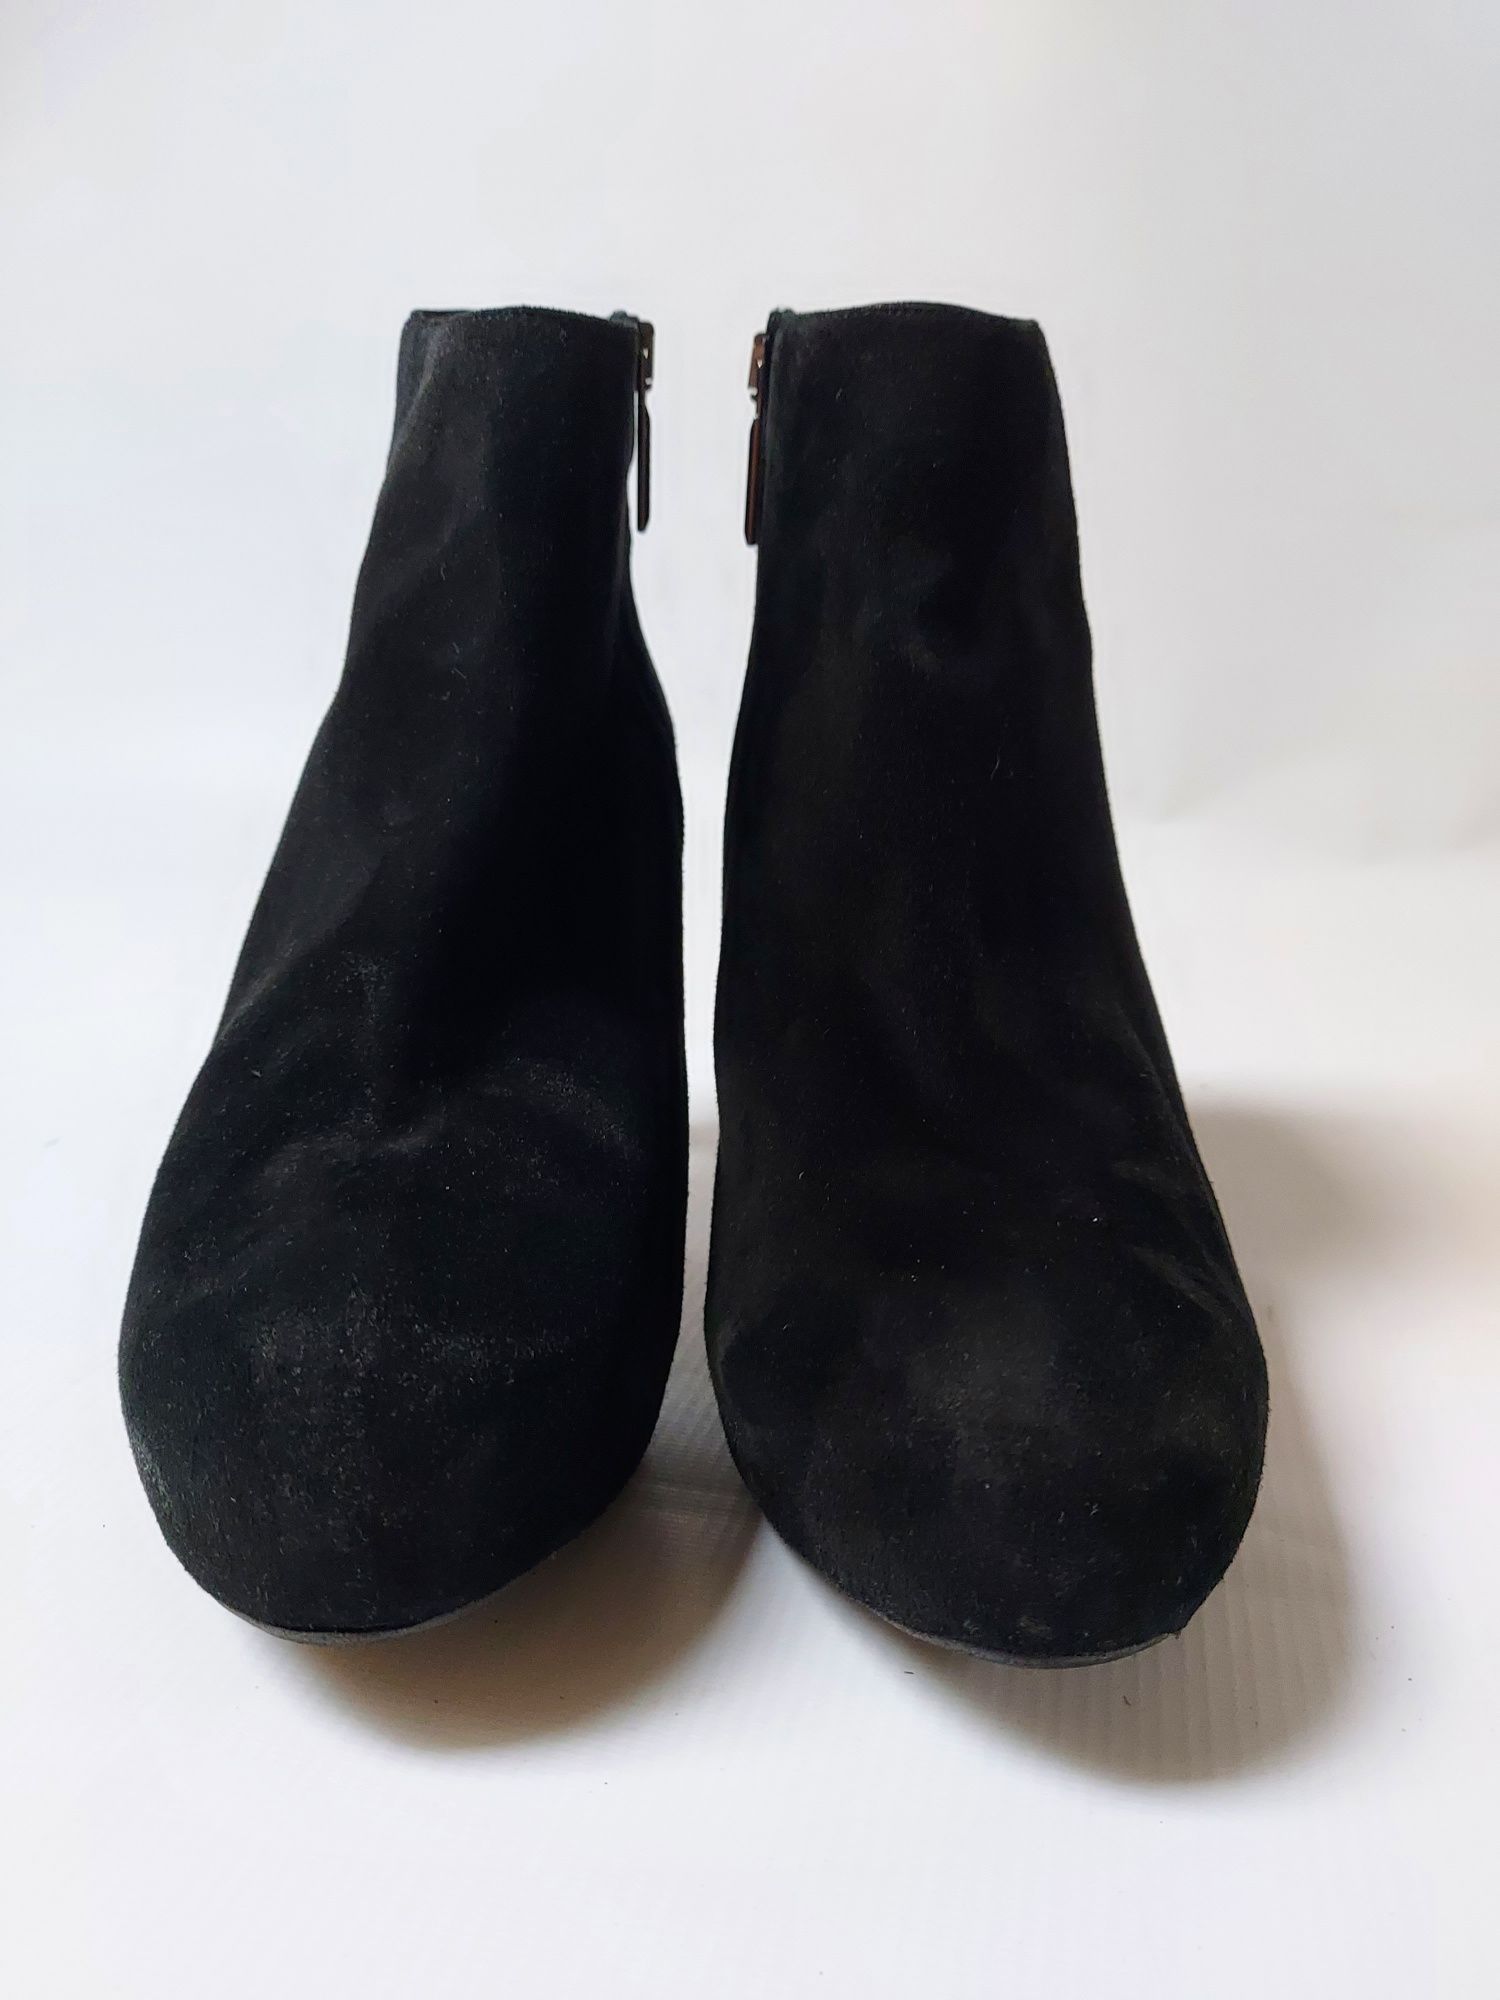 Skórzane czarne botki na obcasie  zamszowe nubuk 40 wkładka 26 cm